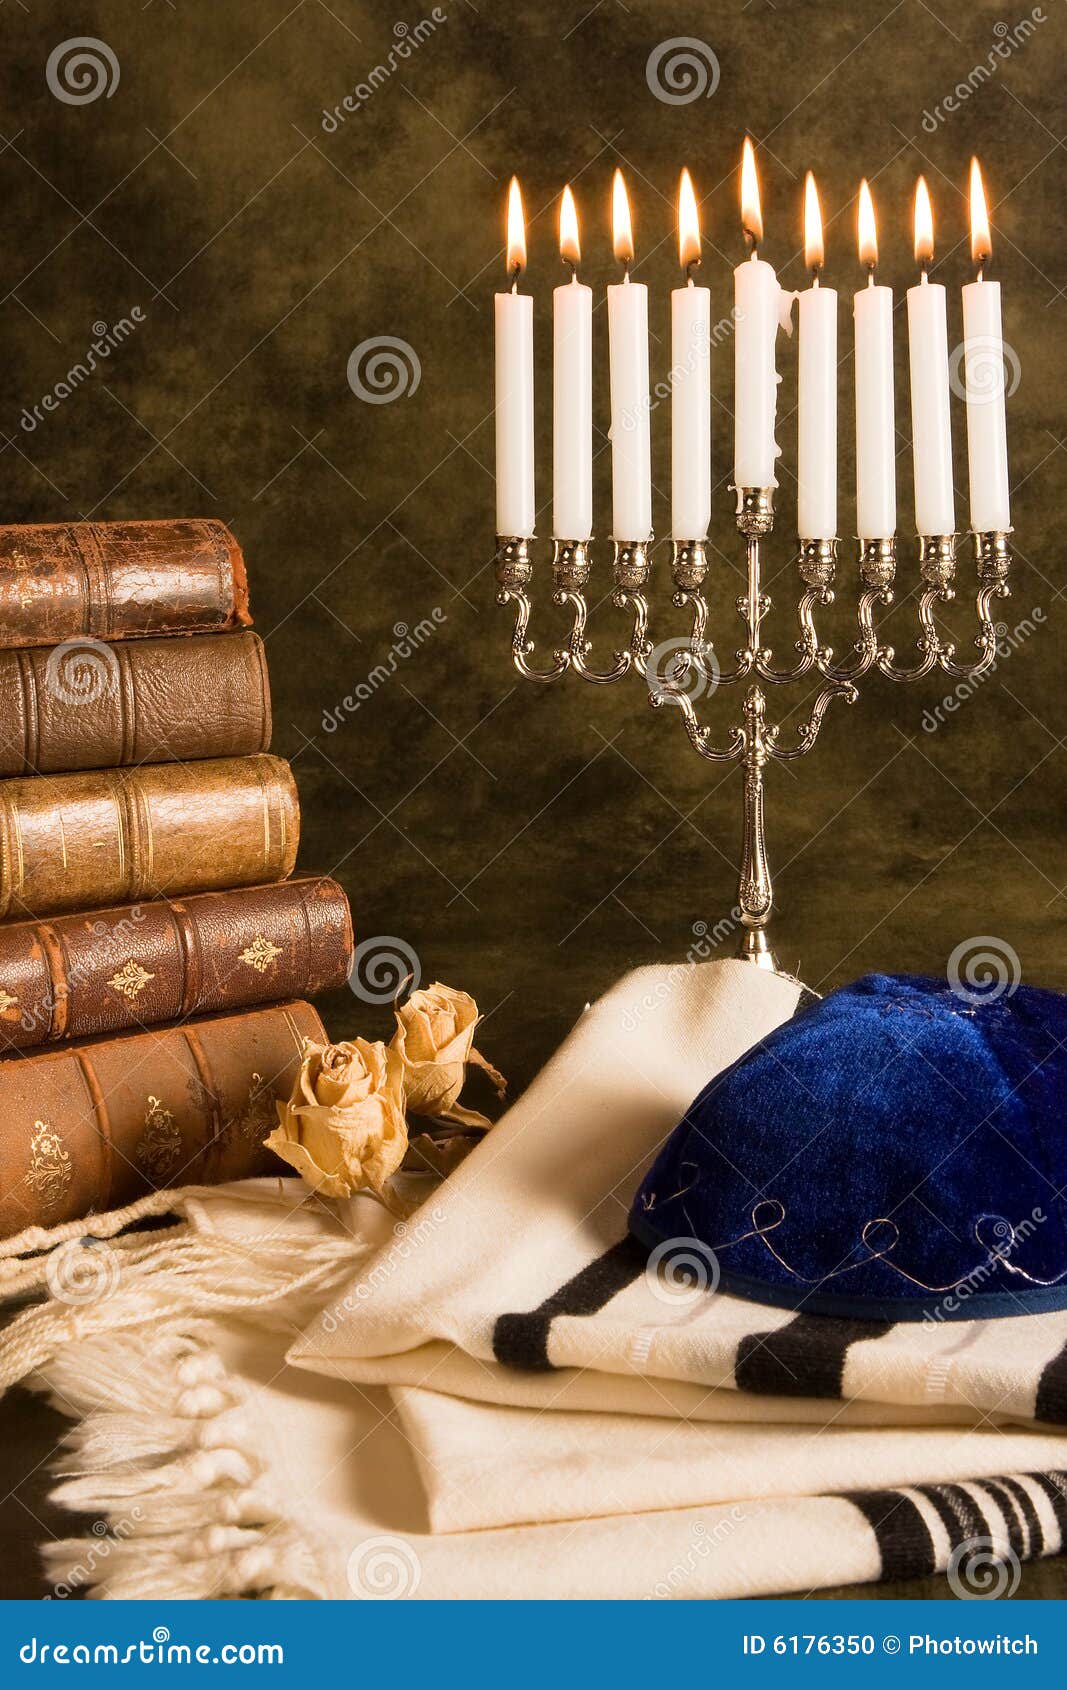 prayer shawl and hanukkah